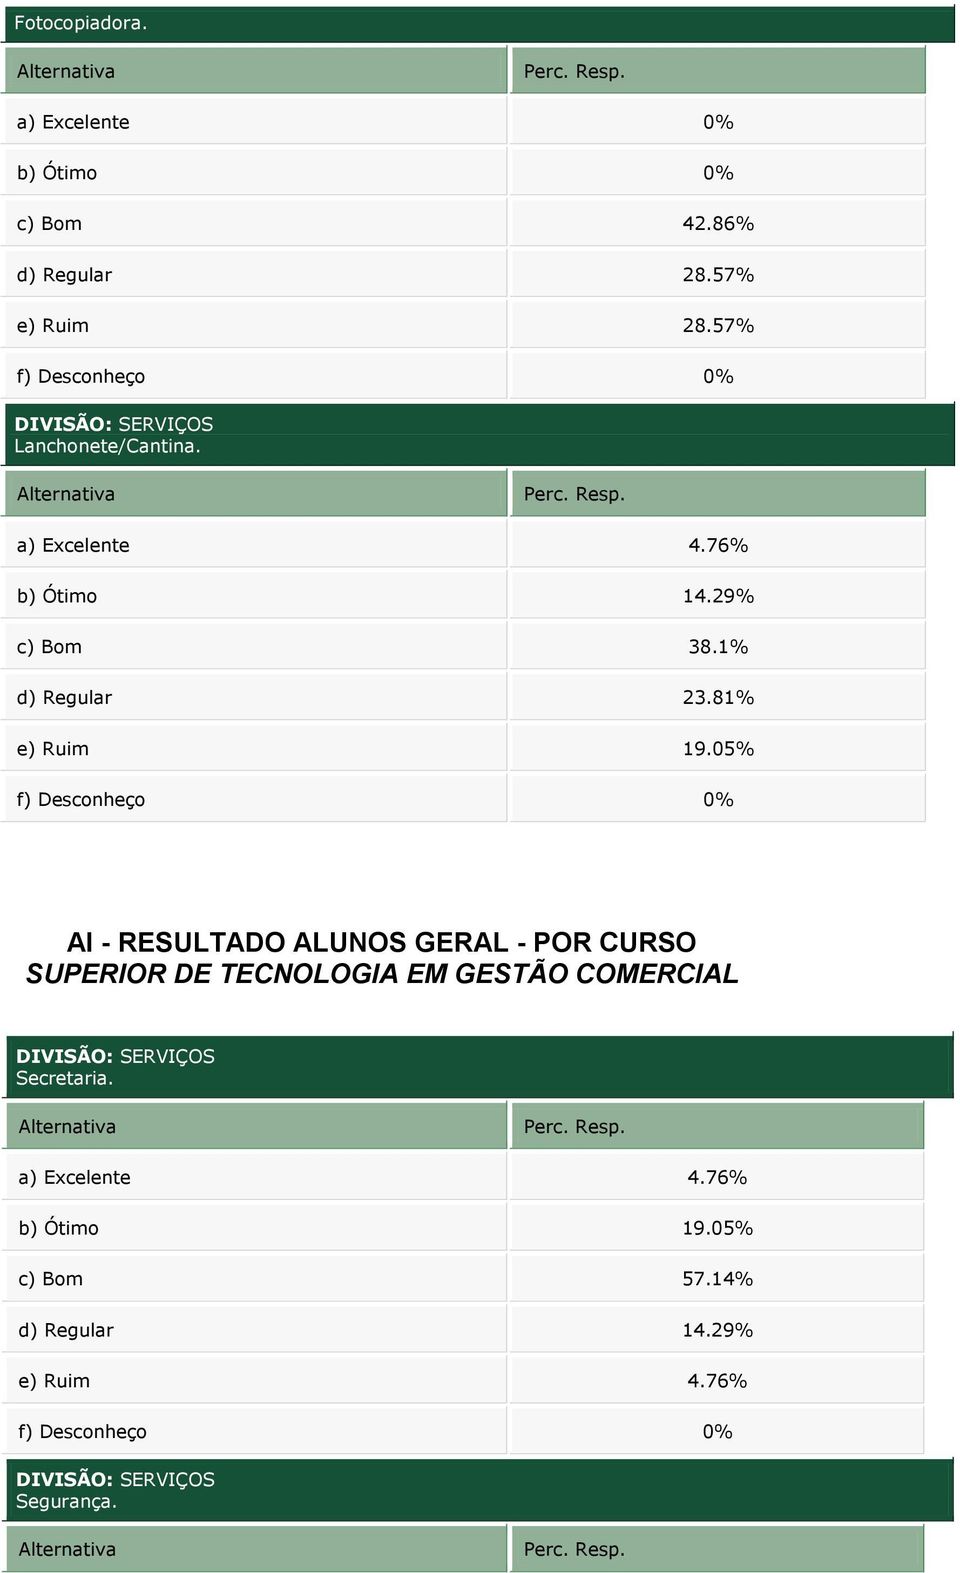 c) Bom 38.1% e) Ruim 19.05% DIVISÃO: SERVIÇOS Secretaria.